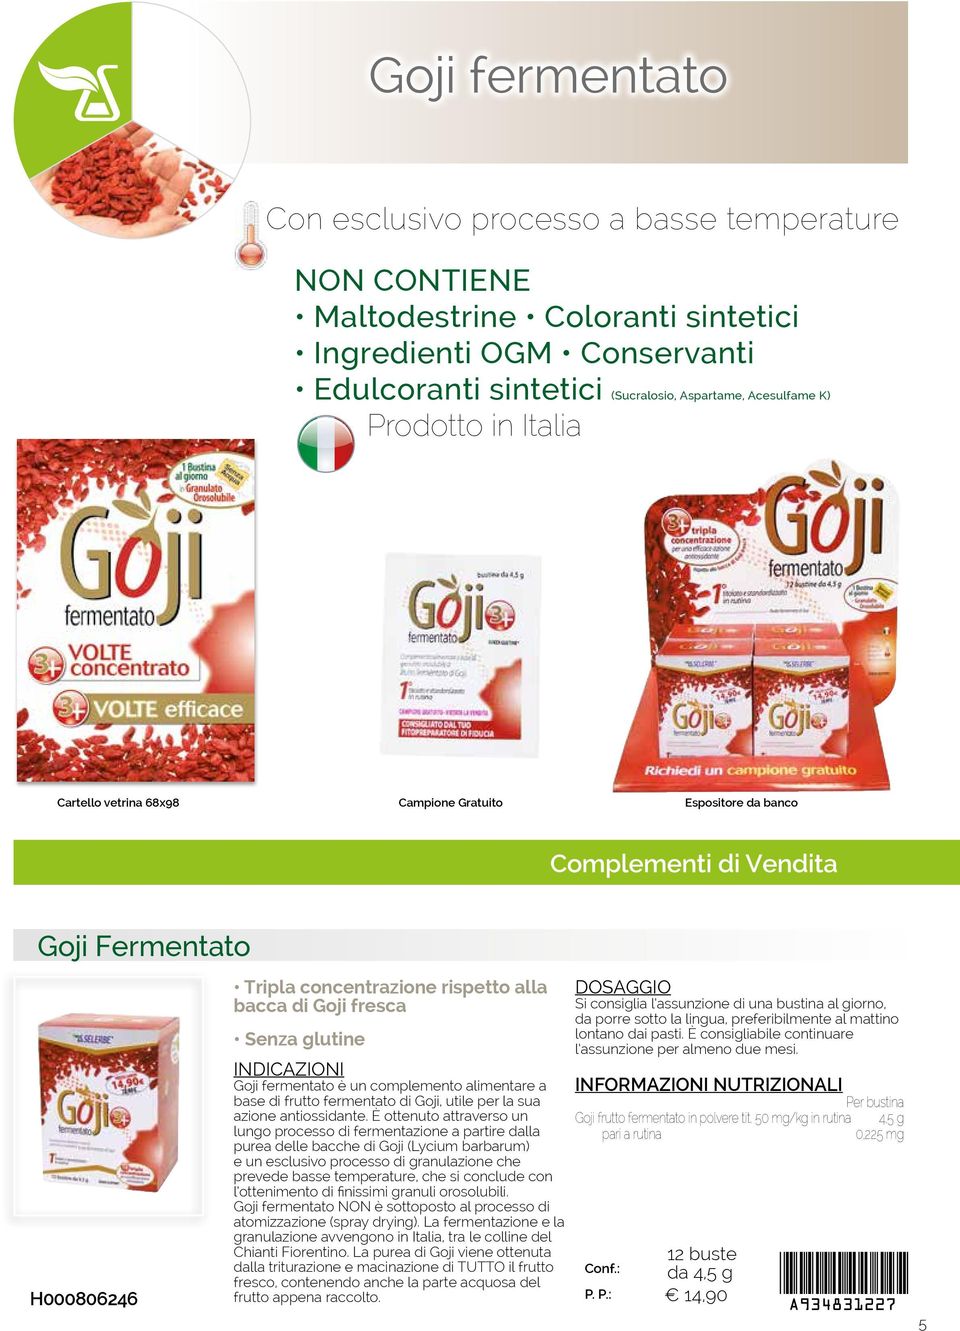 glutine Goji fermentato è un complemento alimentare a base di frutto fermentato di Goji, utile per la sua azione antiossidante.